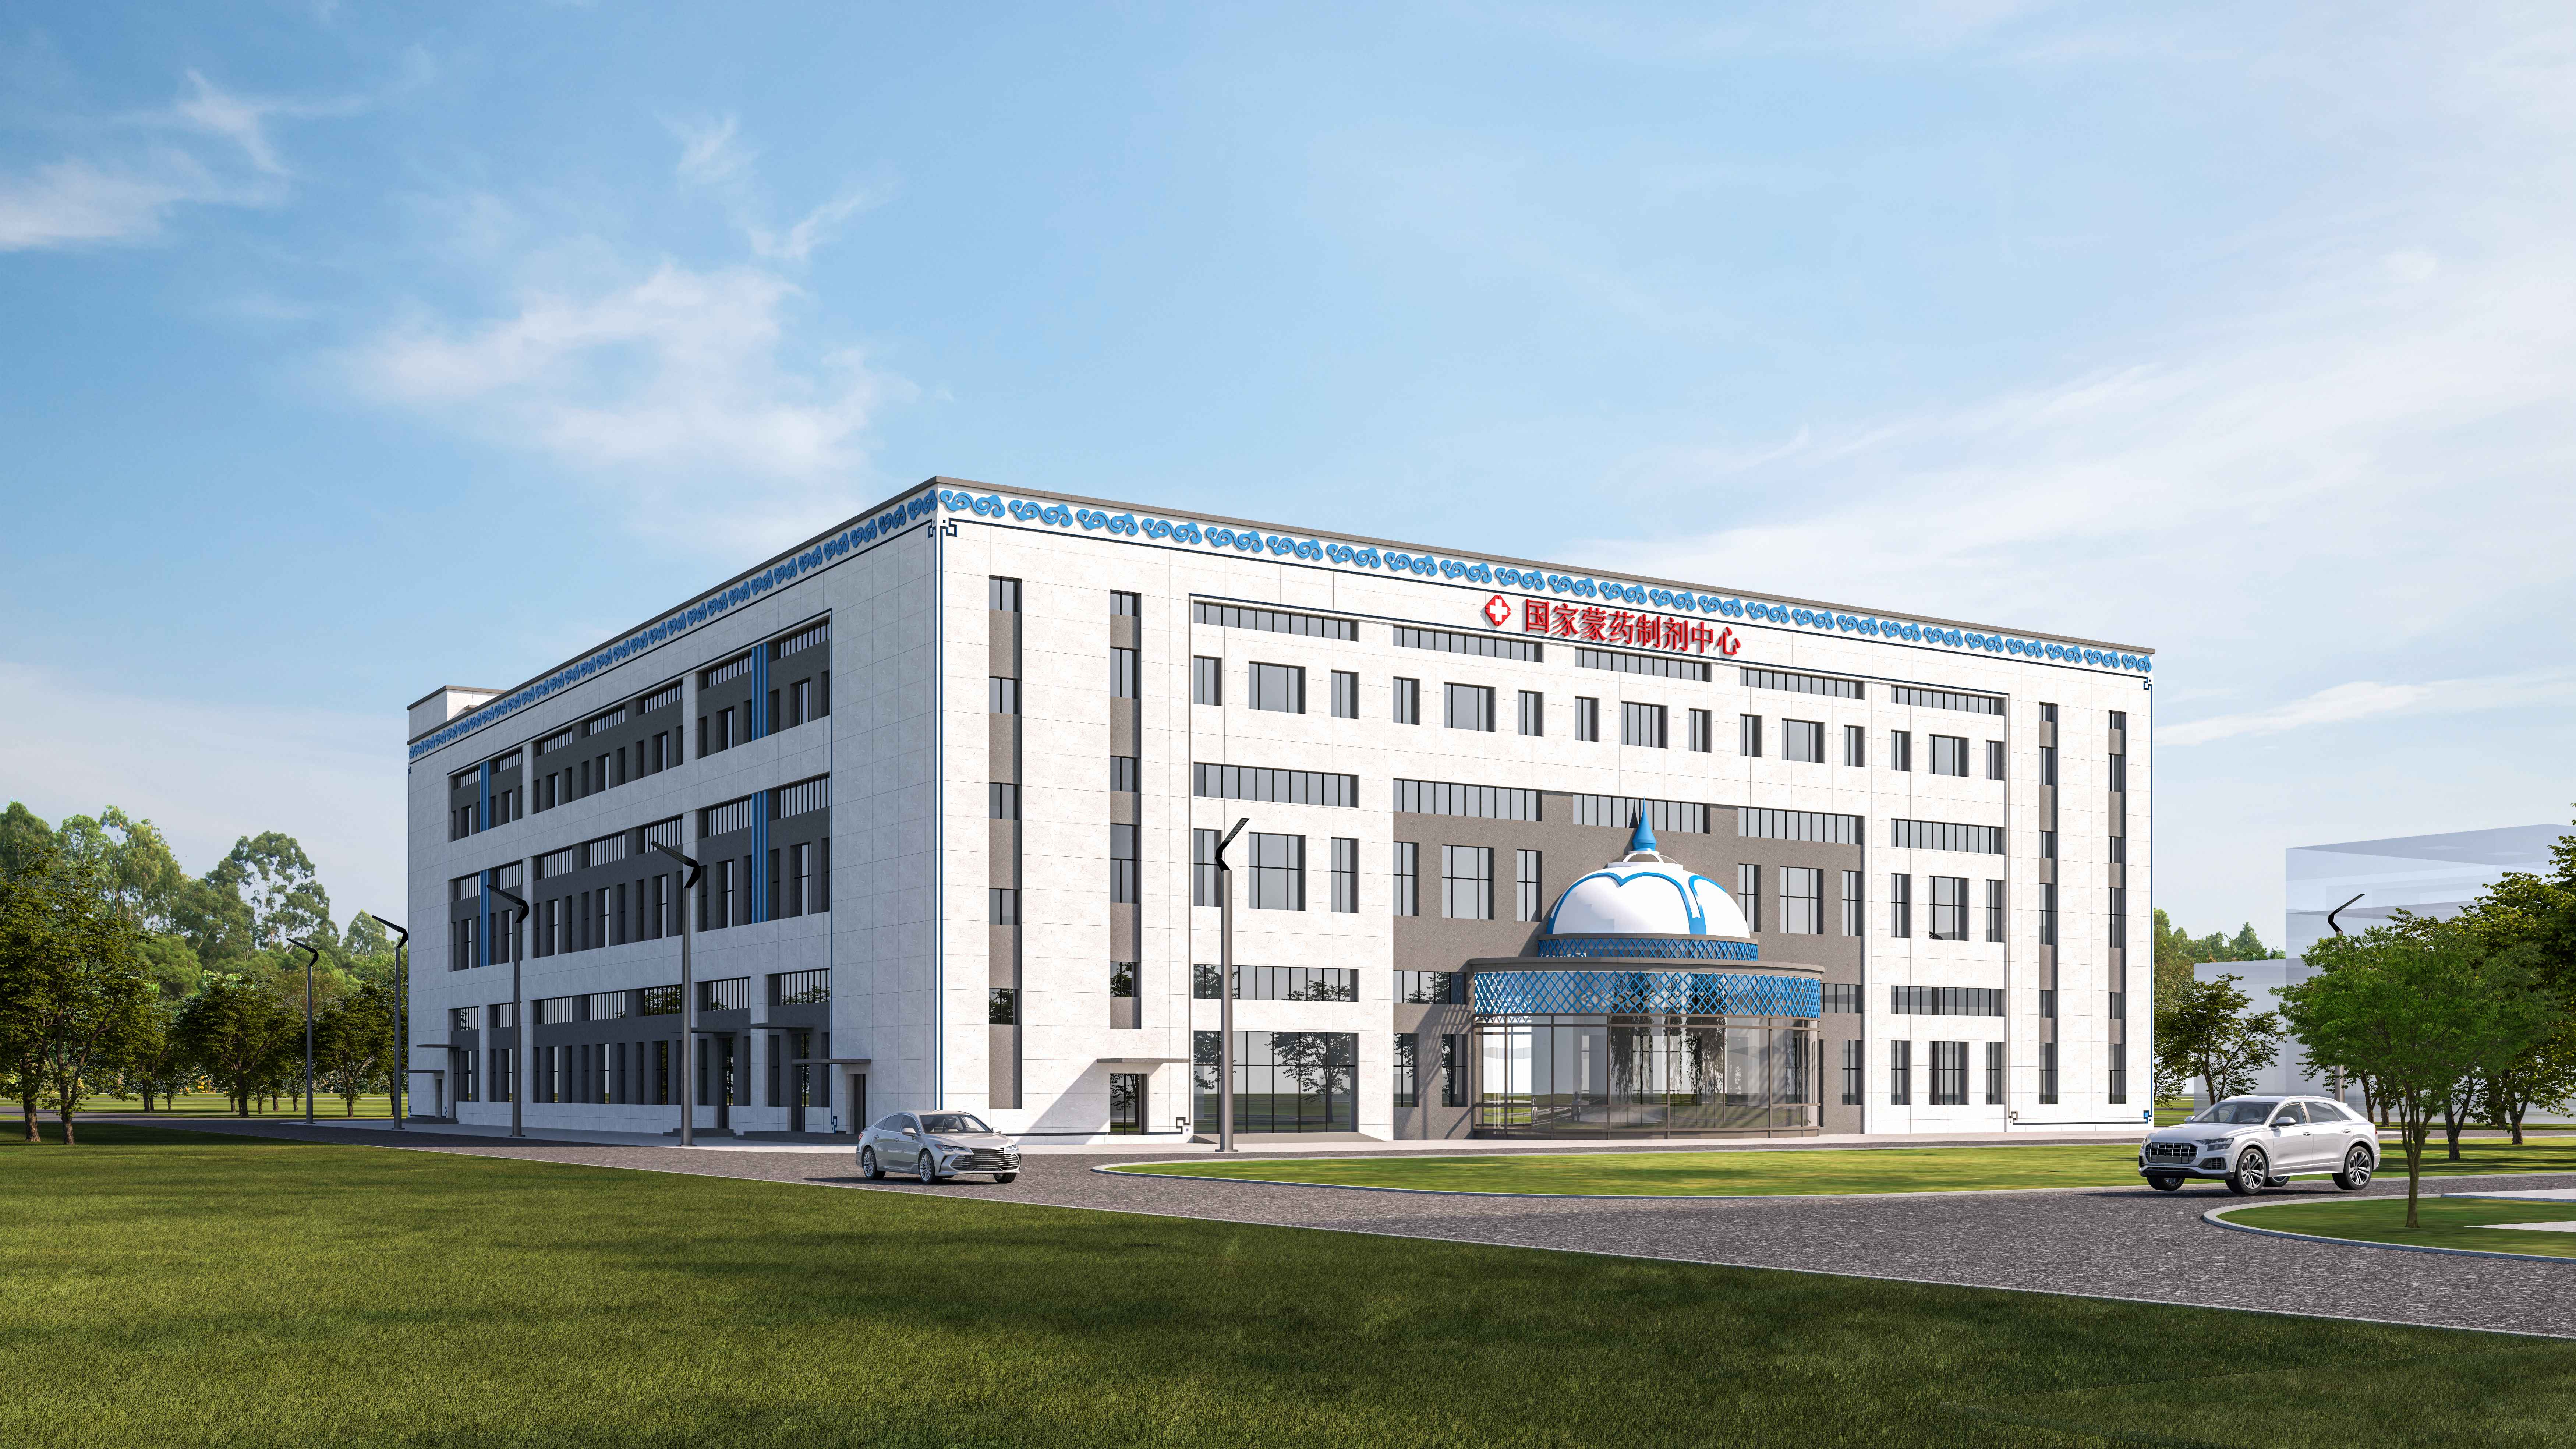 内蒙古国际蒙医医院国家蒙药制剂中心新址在和林格尔新区奠基开工